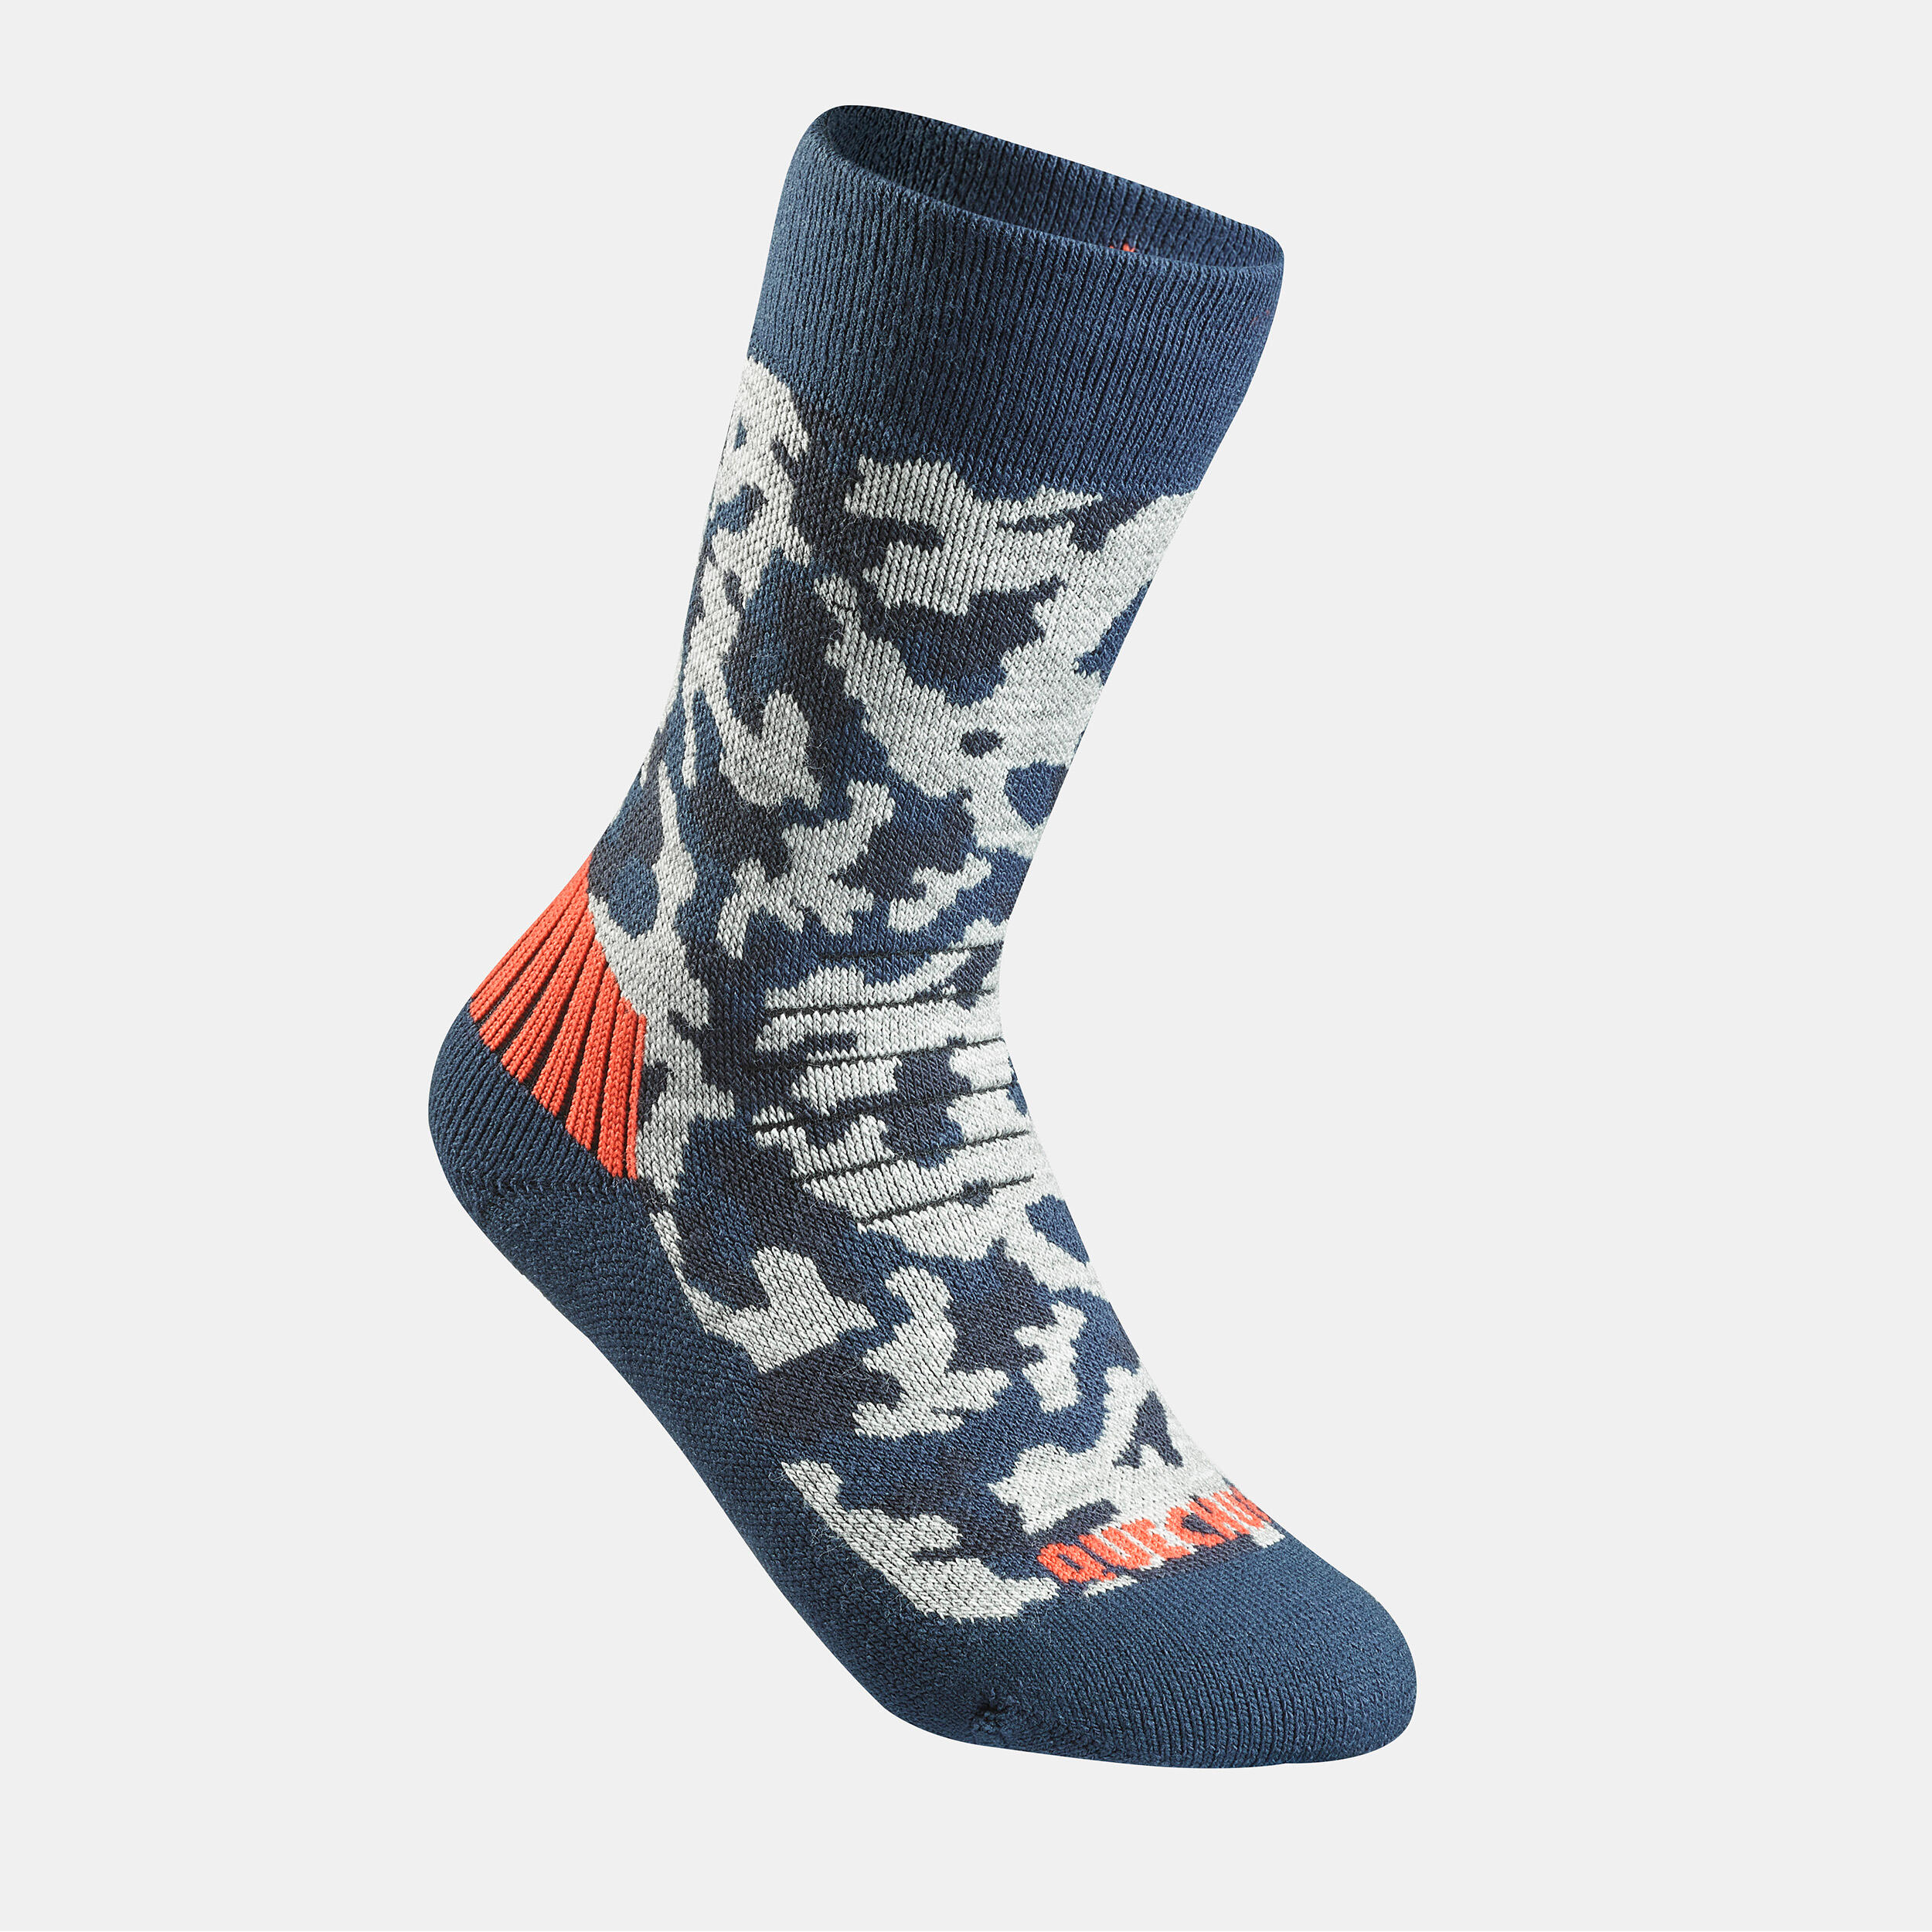 Kids’ Warm Hiking Socks SH100 Mid 2 Pairs 4/7